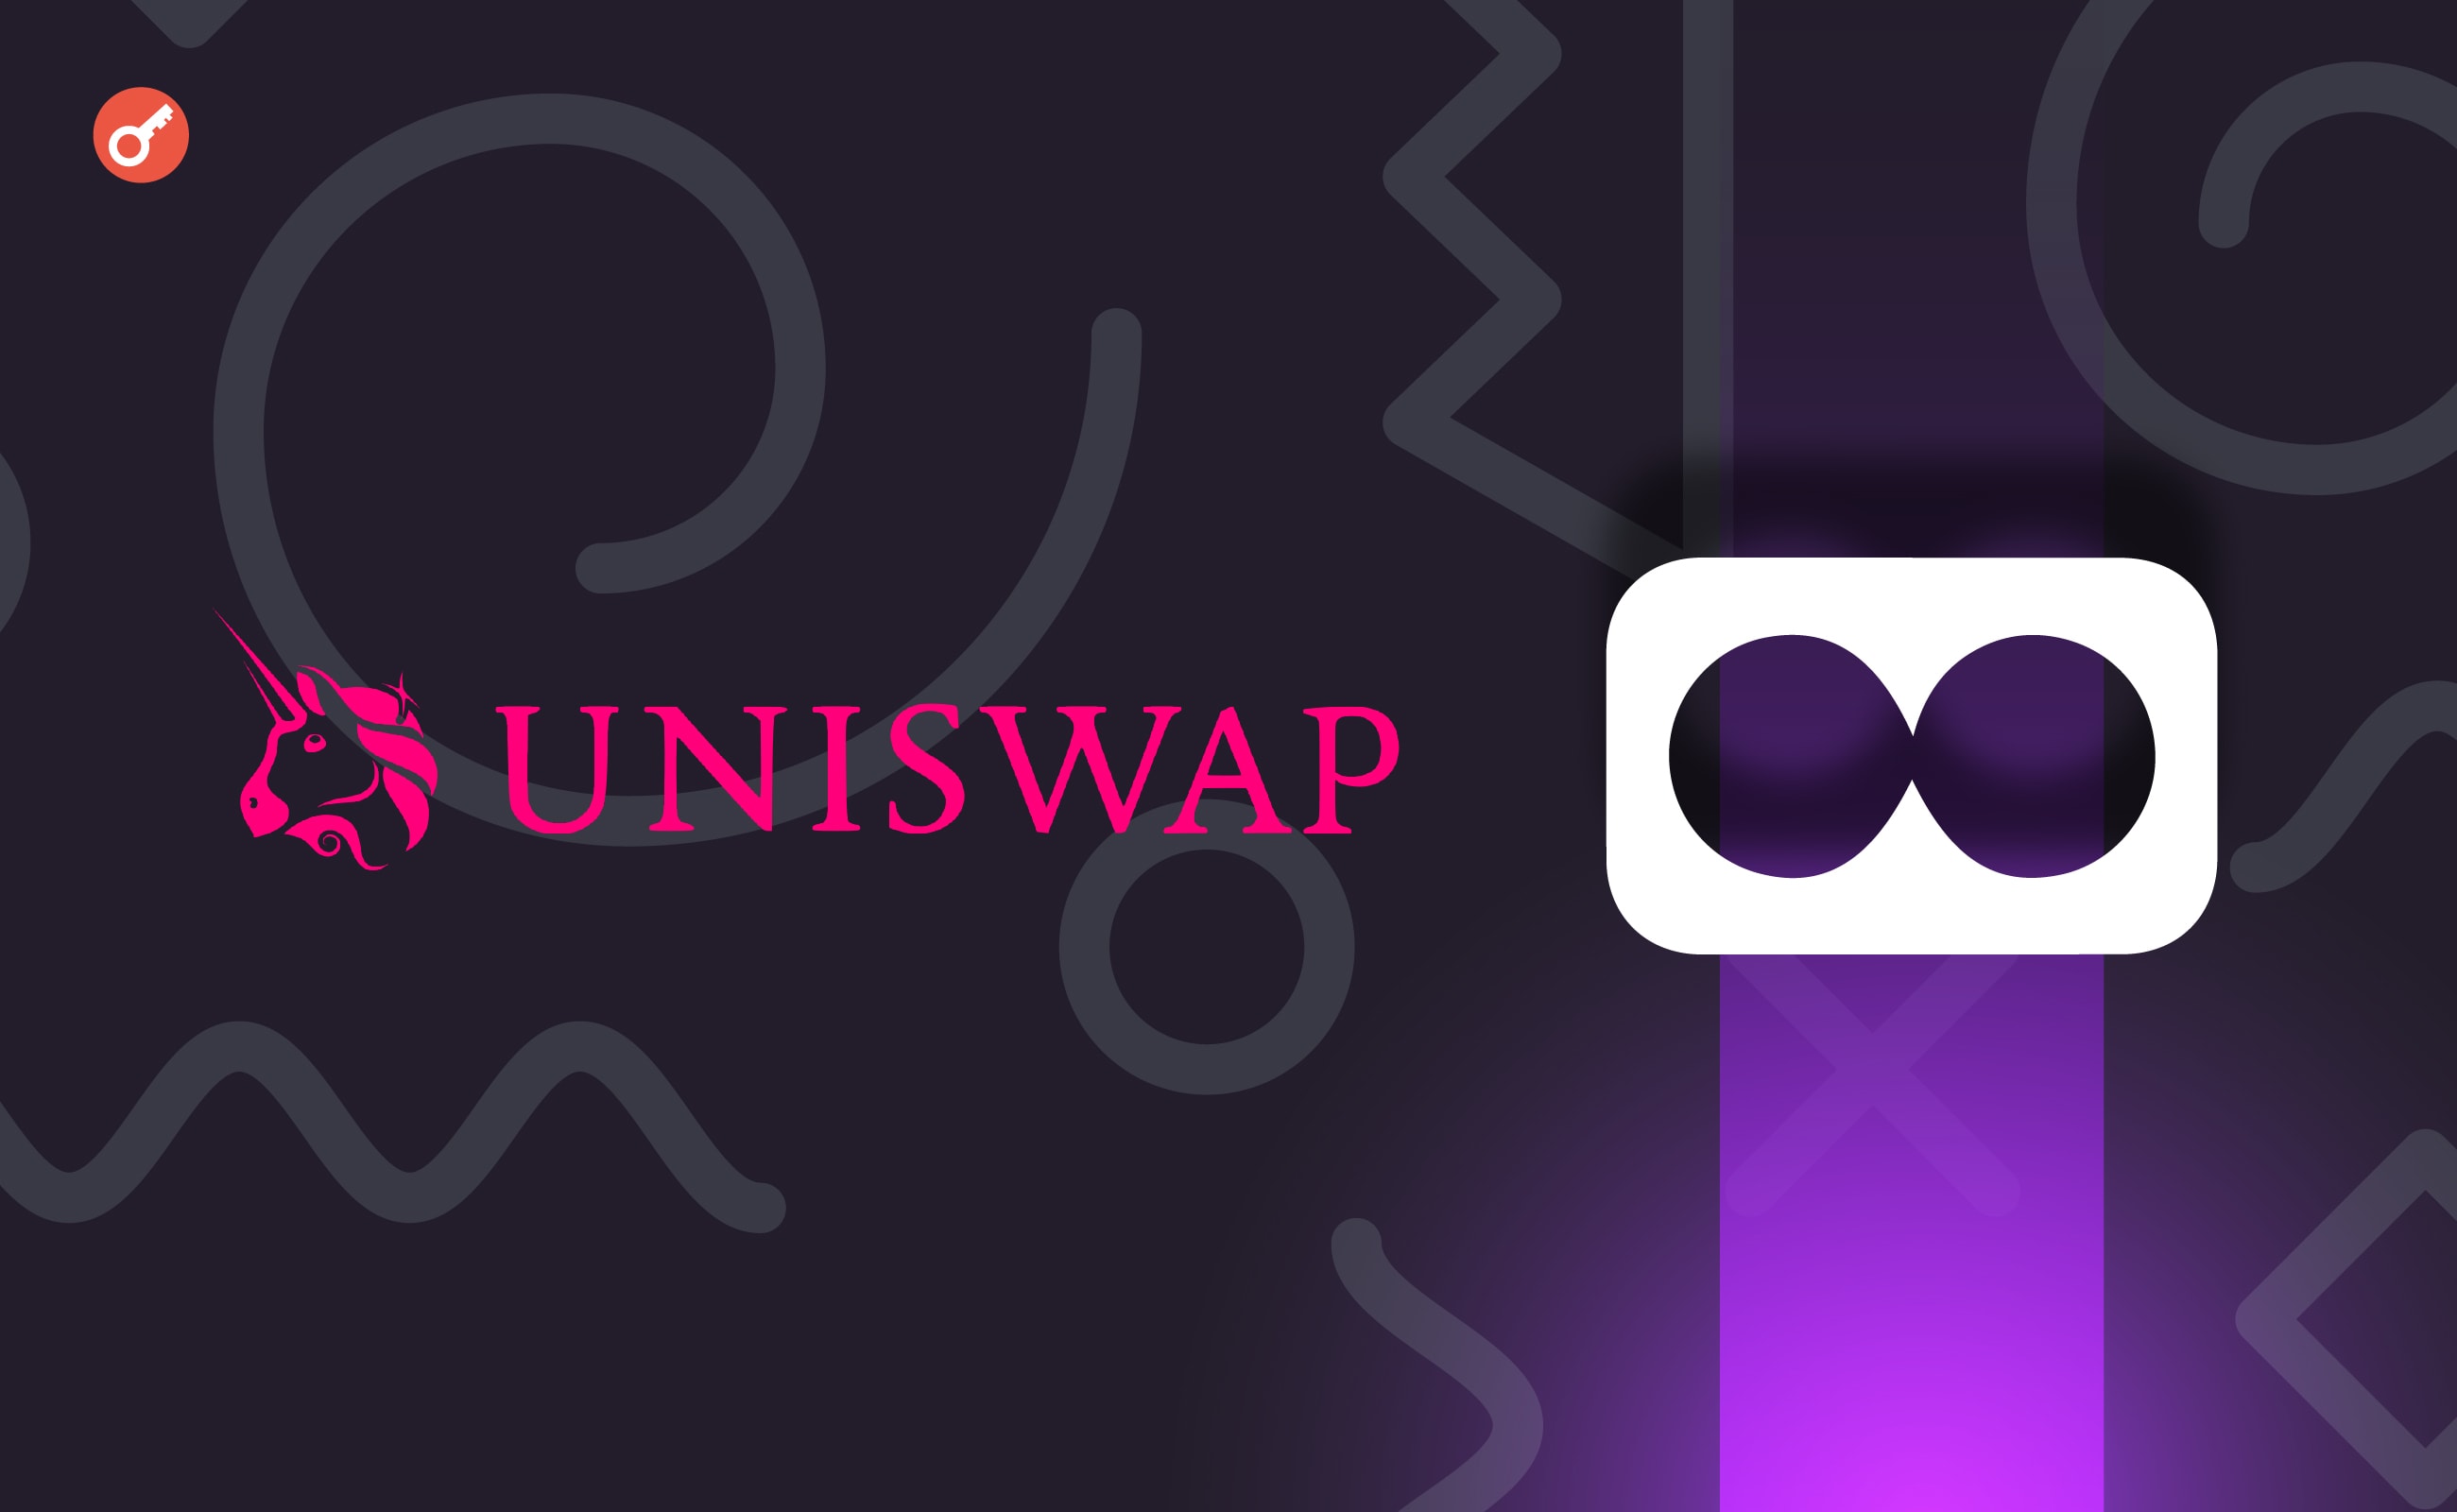 Uniswap DAO поддержала инвестиции $12 млн в протокол Ekubo. Заглавный коллаж новости.